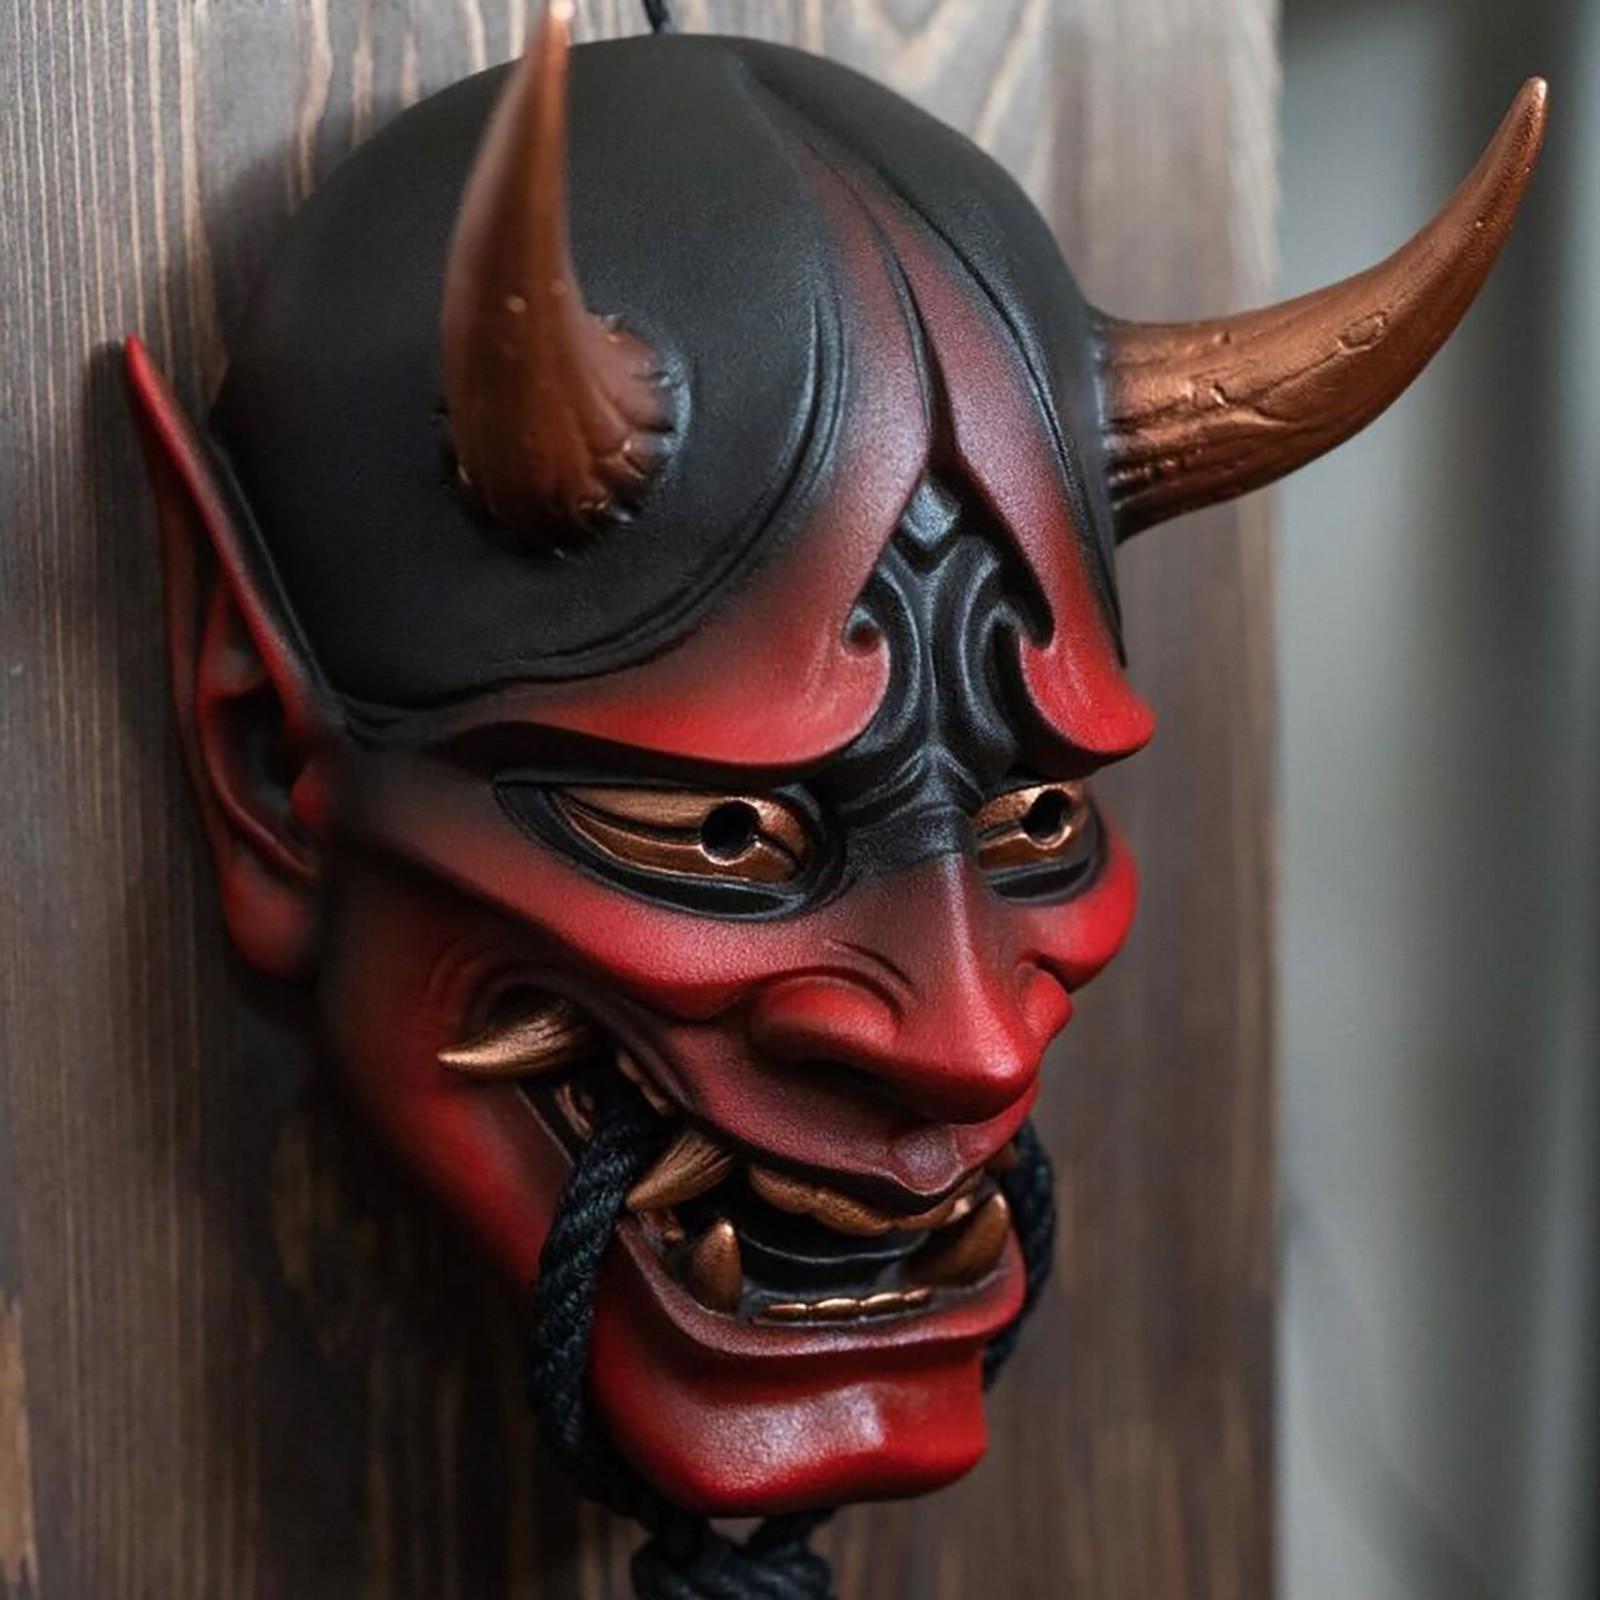 Máscara de demonio japonés en la cara del carnaval.